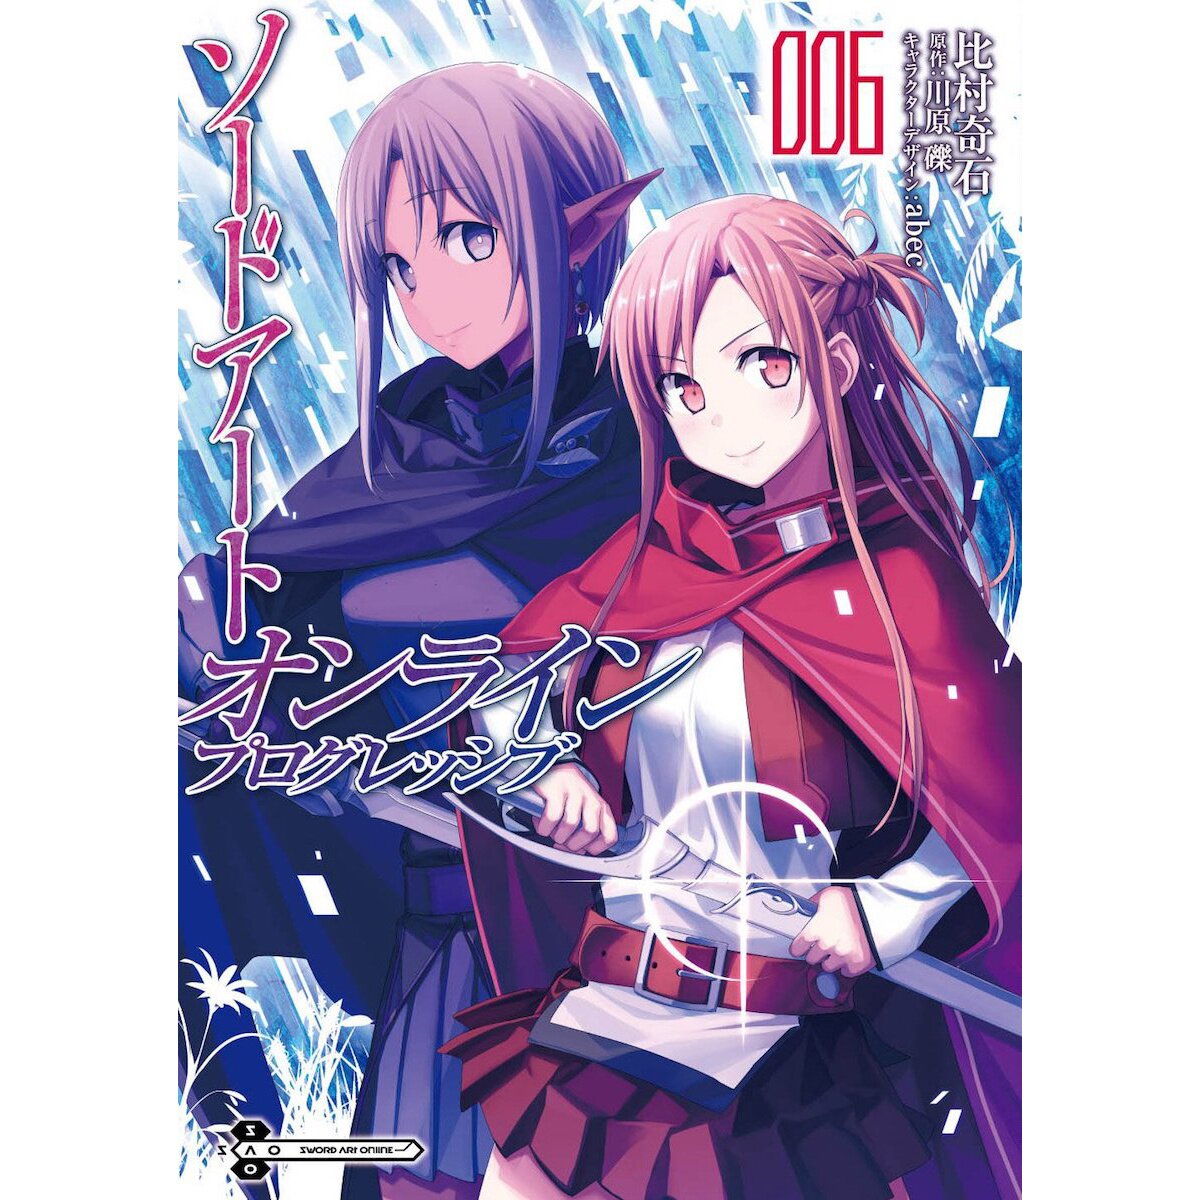 Sword Art Online Progressive, Vol. 1 - manga